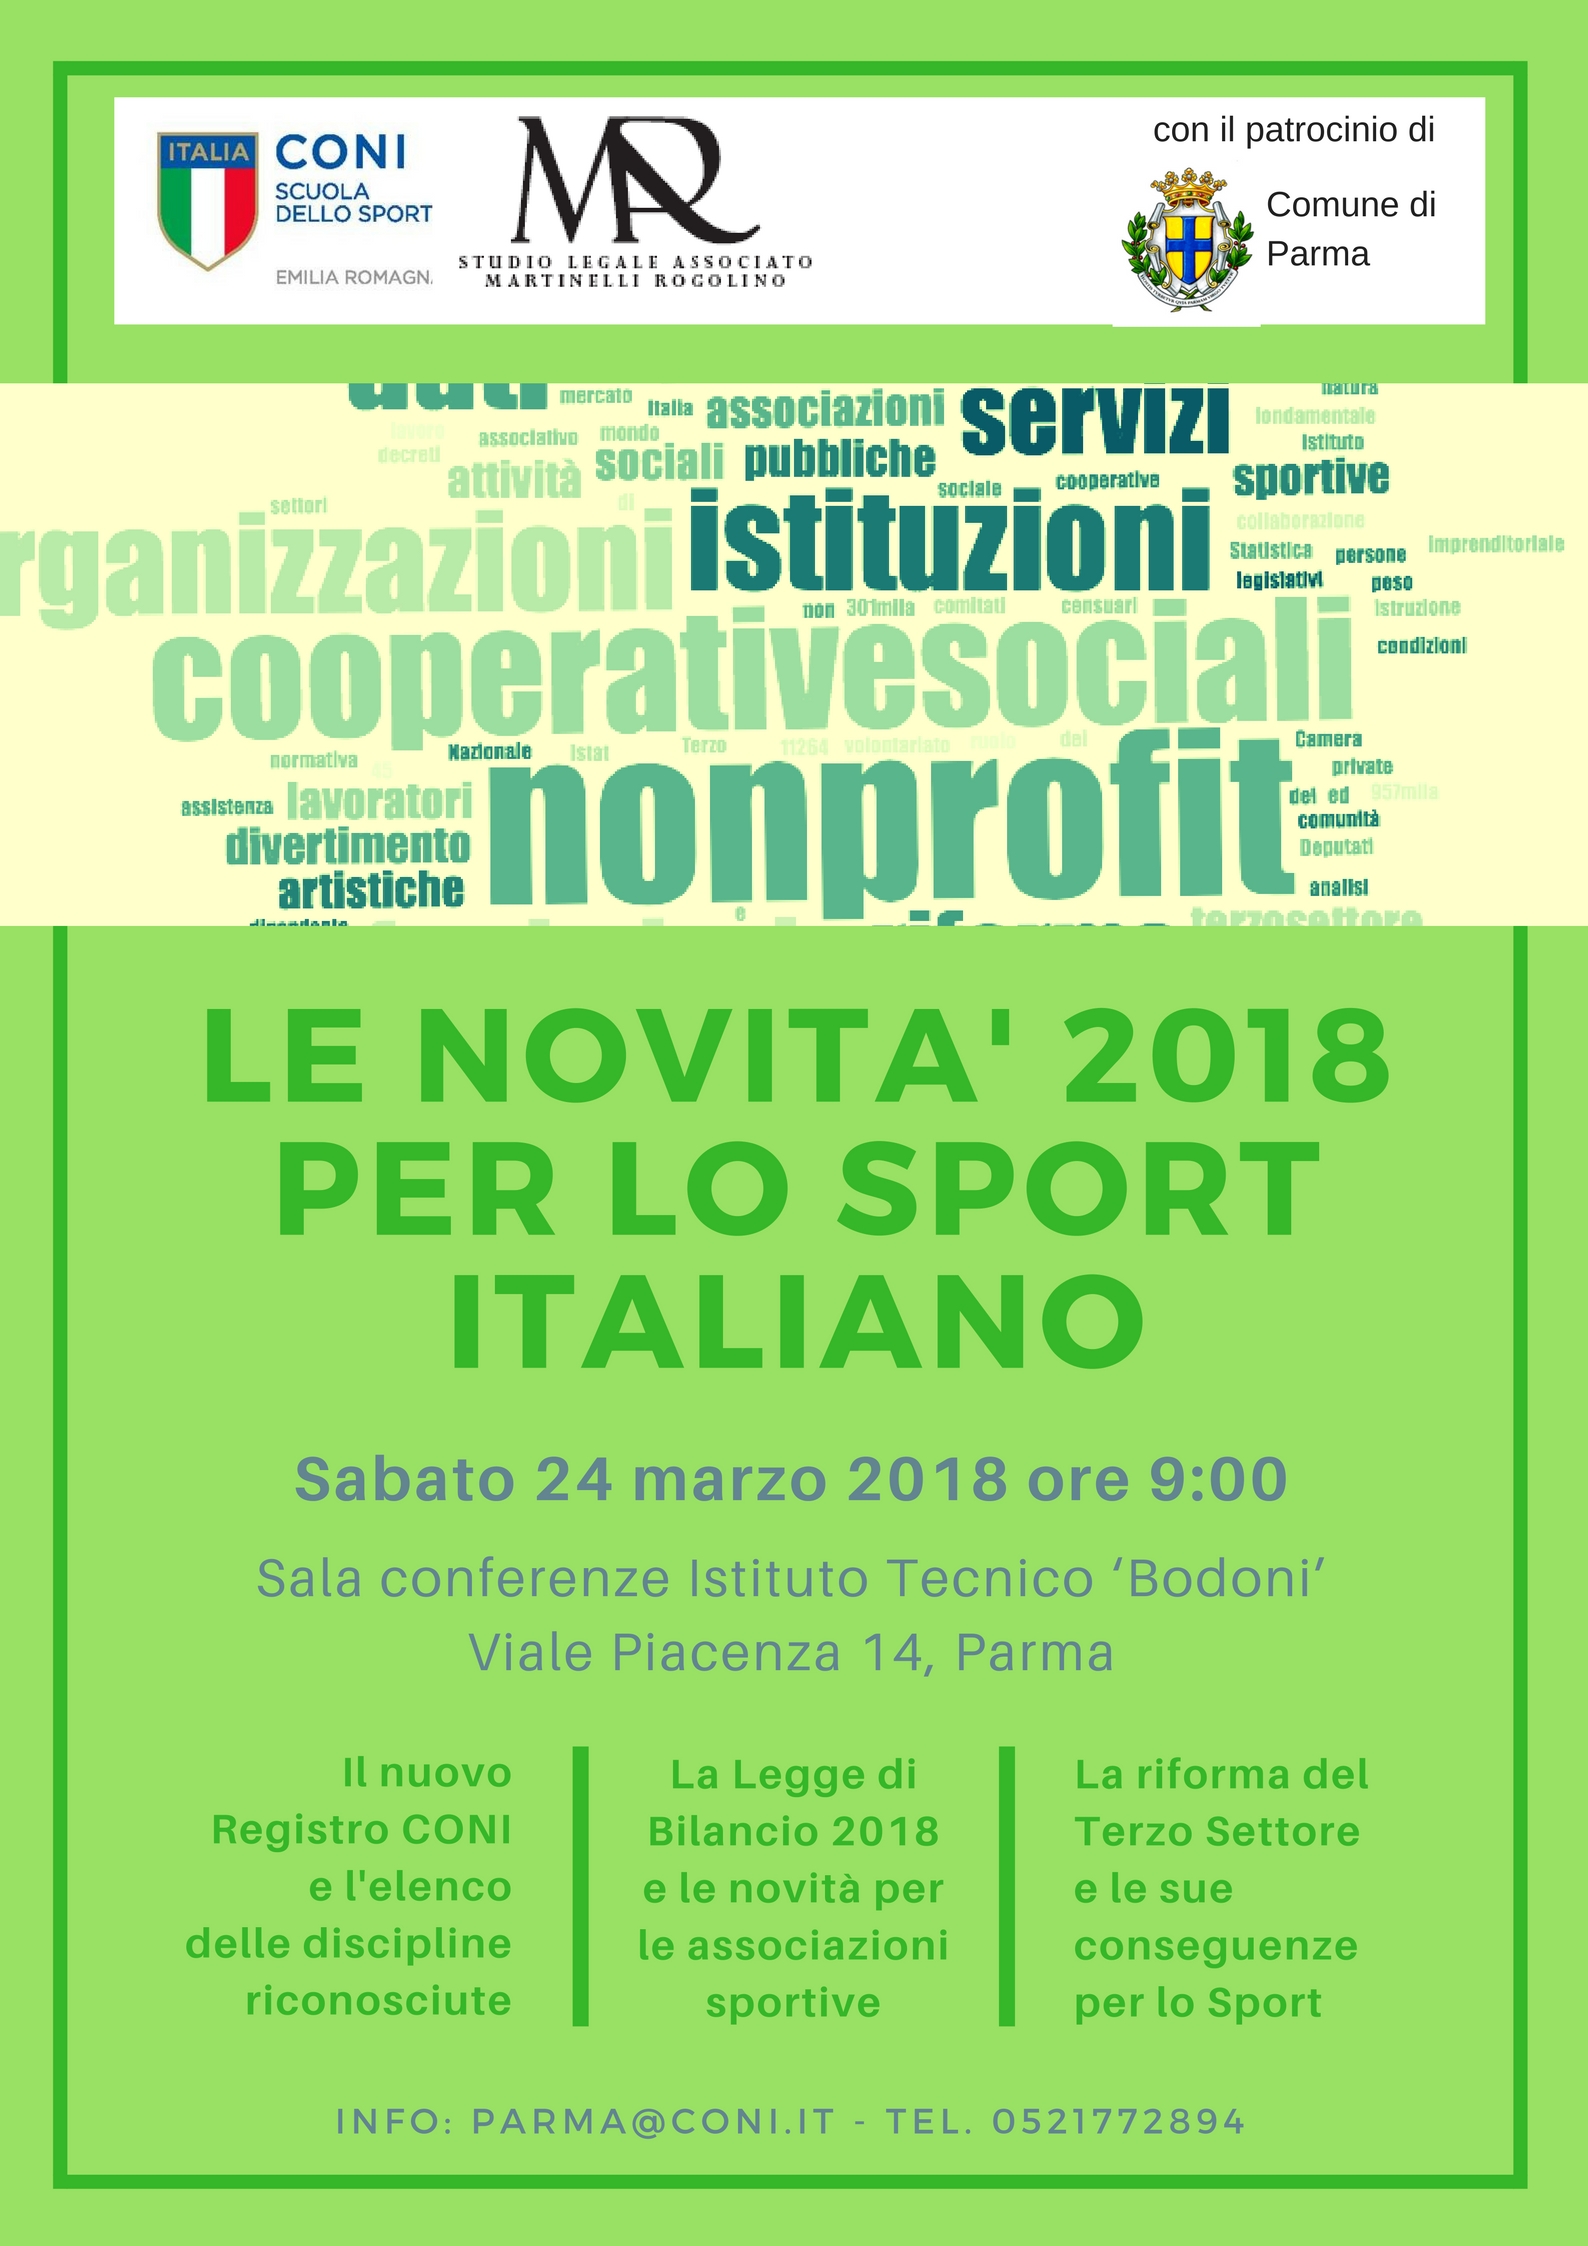 Le novità 2018 per lo sport italiano (seminario gratuito)